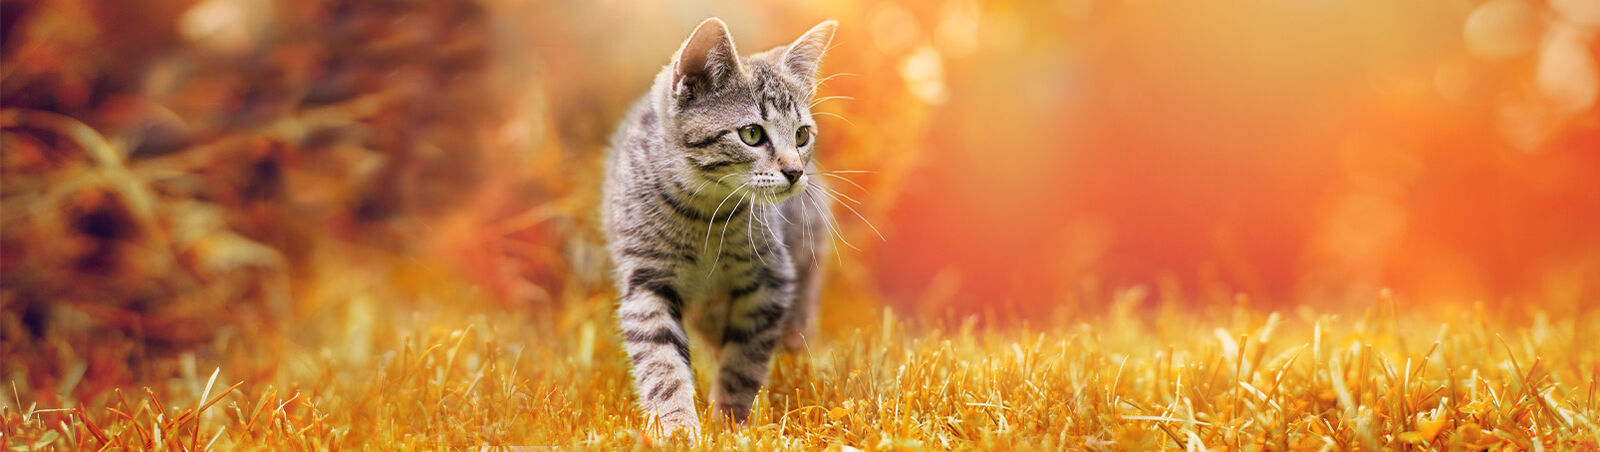 Kitten geht im Gegenlicht über Gras.